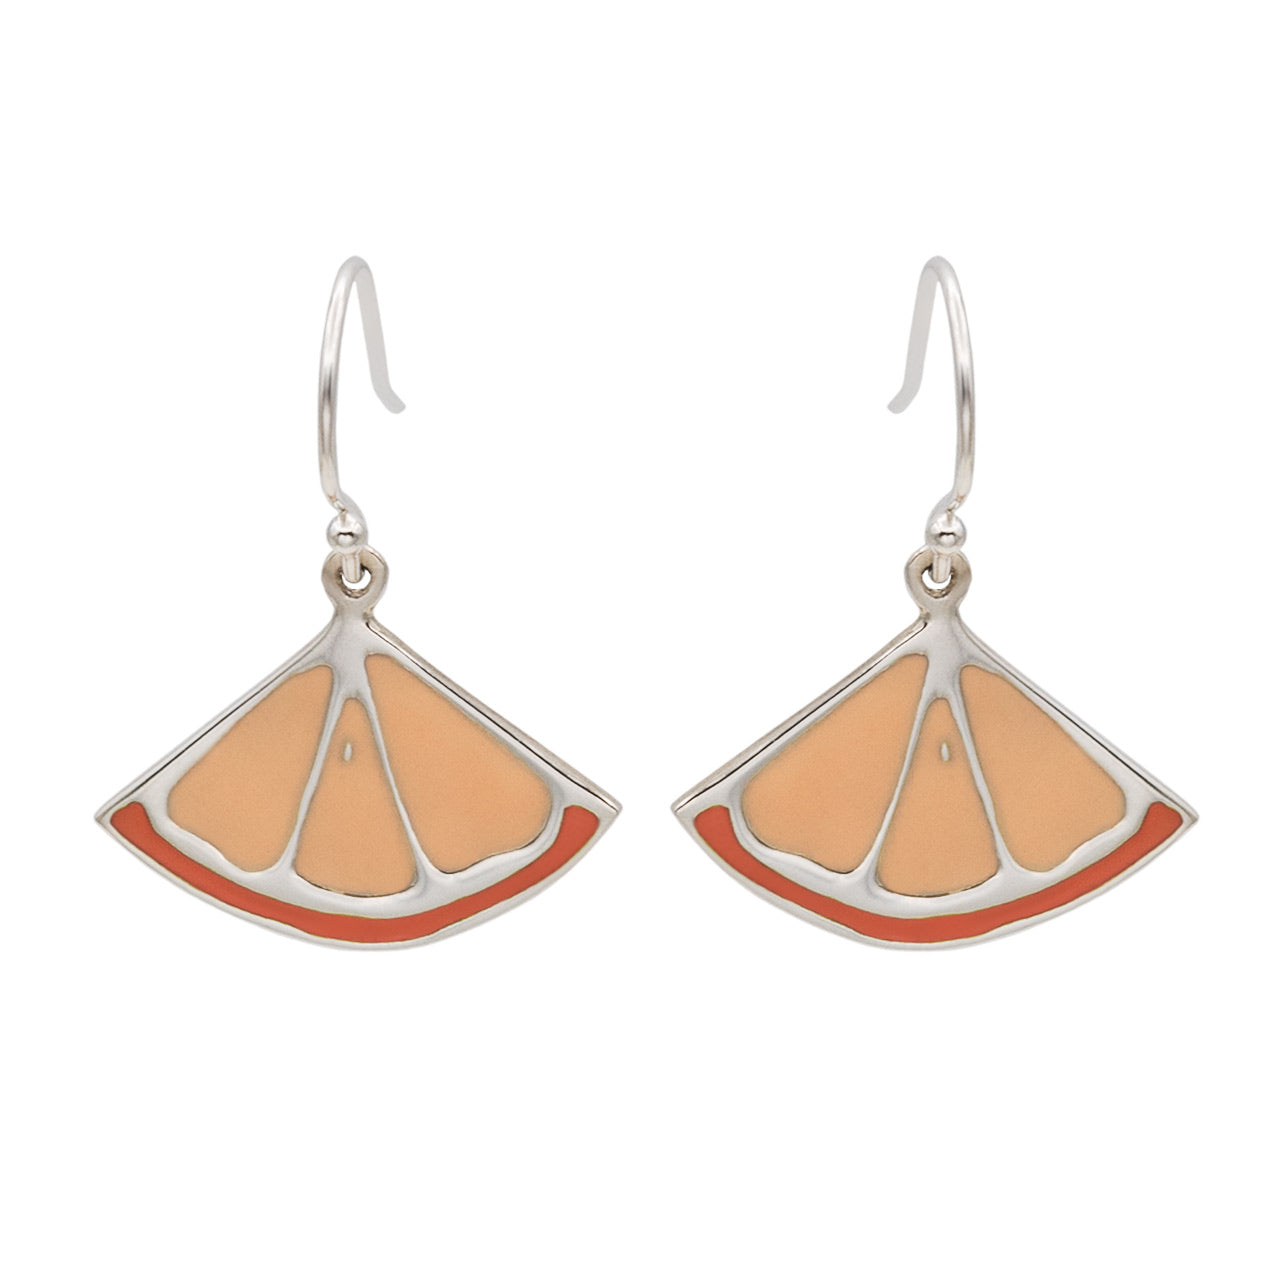 clementine dangling earrings in sterling silver 925